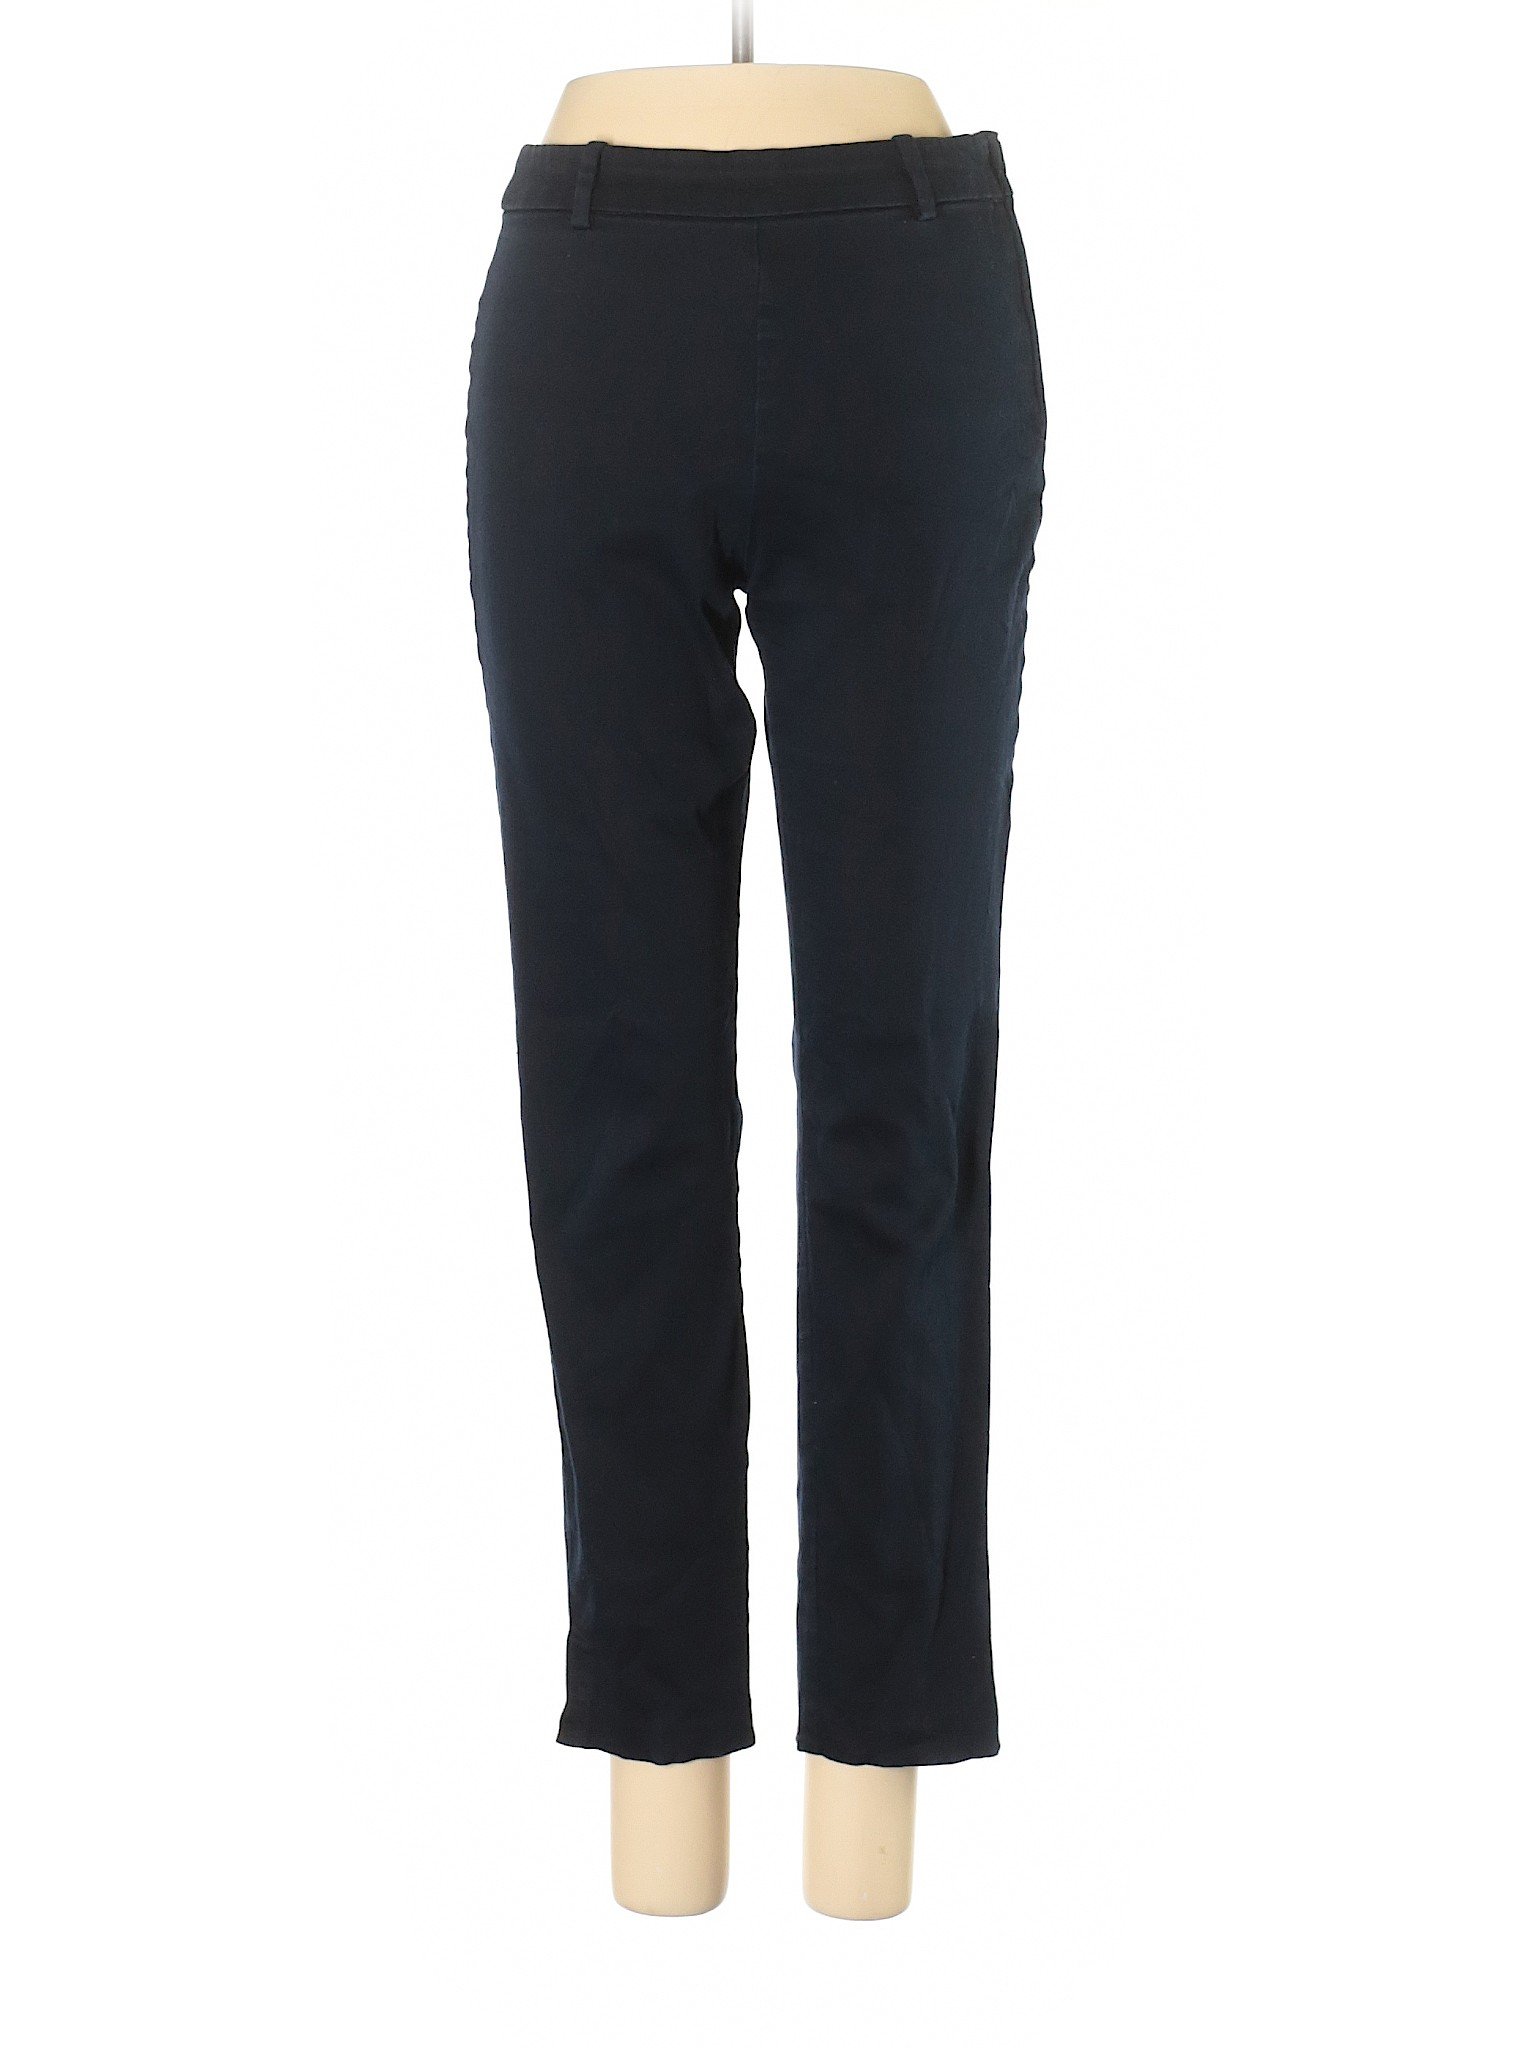 H&M Women Black Dress Pants 6 | eBay